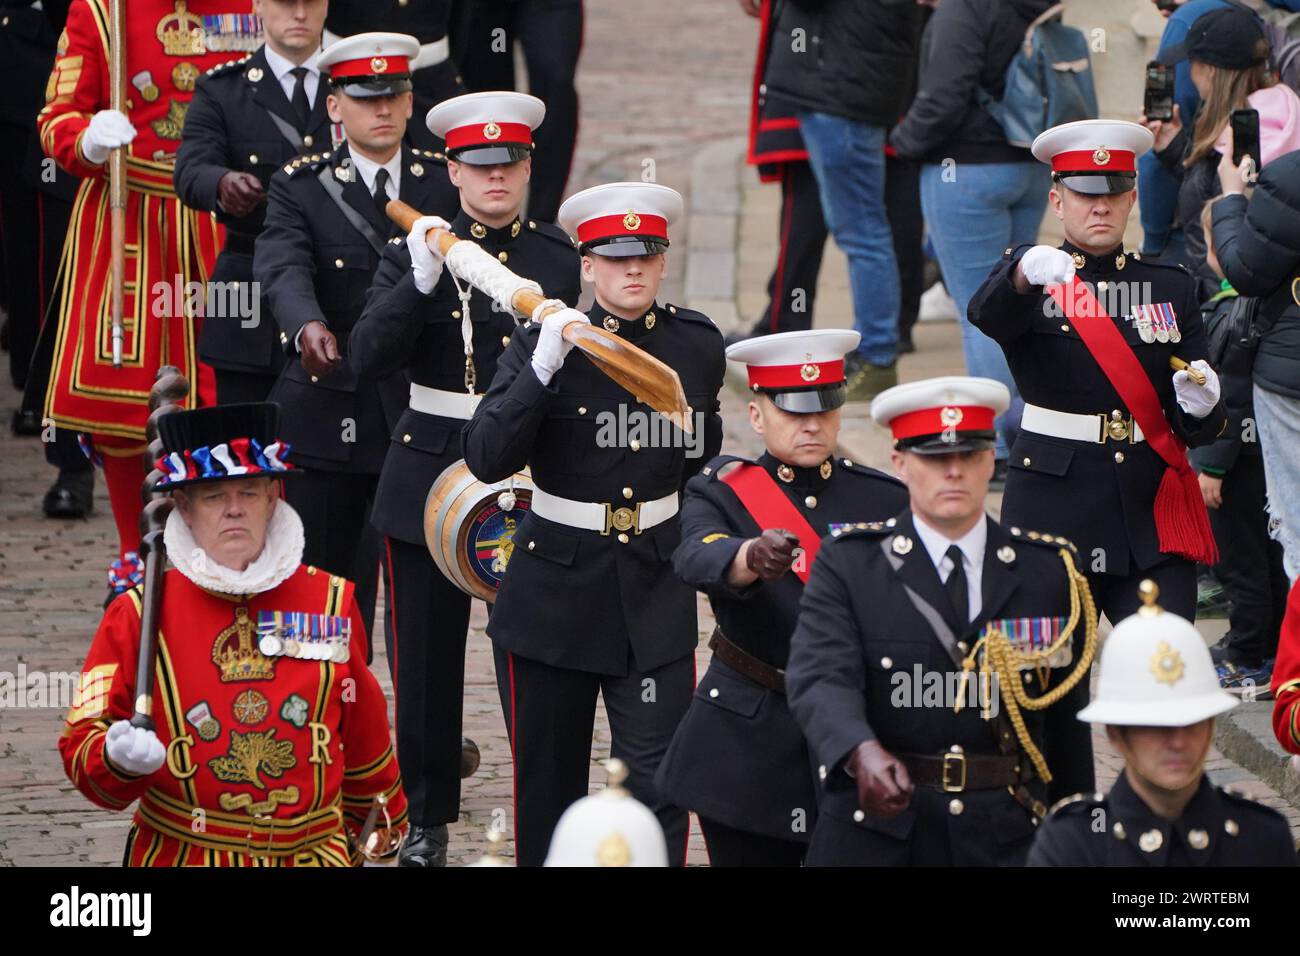 Die Royal Marines tragen während der alten Zeremonie der Constable's Duty ein Hafenfass, wenn dem Constable ein Hafenfass im Tower of London überreicht wird. Die diesjährige Zeremonie wird von den Royal Marines zu ihrem 360. Jahrestag durchgeführt. Bilddatum: Donnerstag, 14. März 2024. Stockfoto